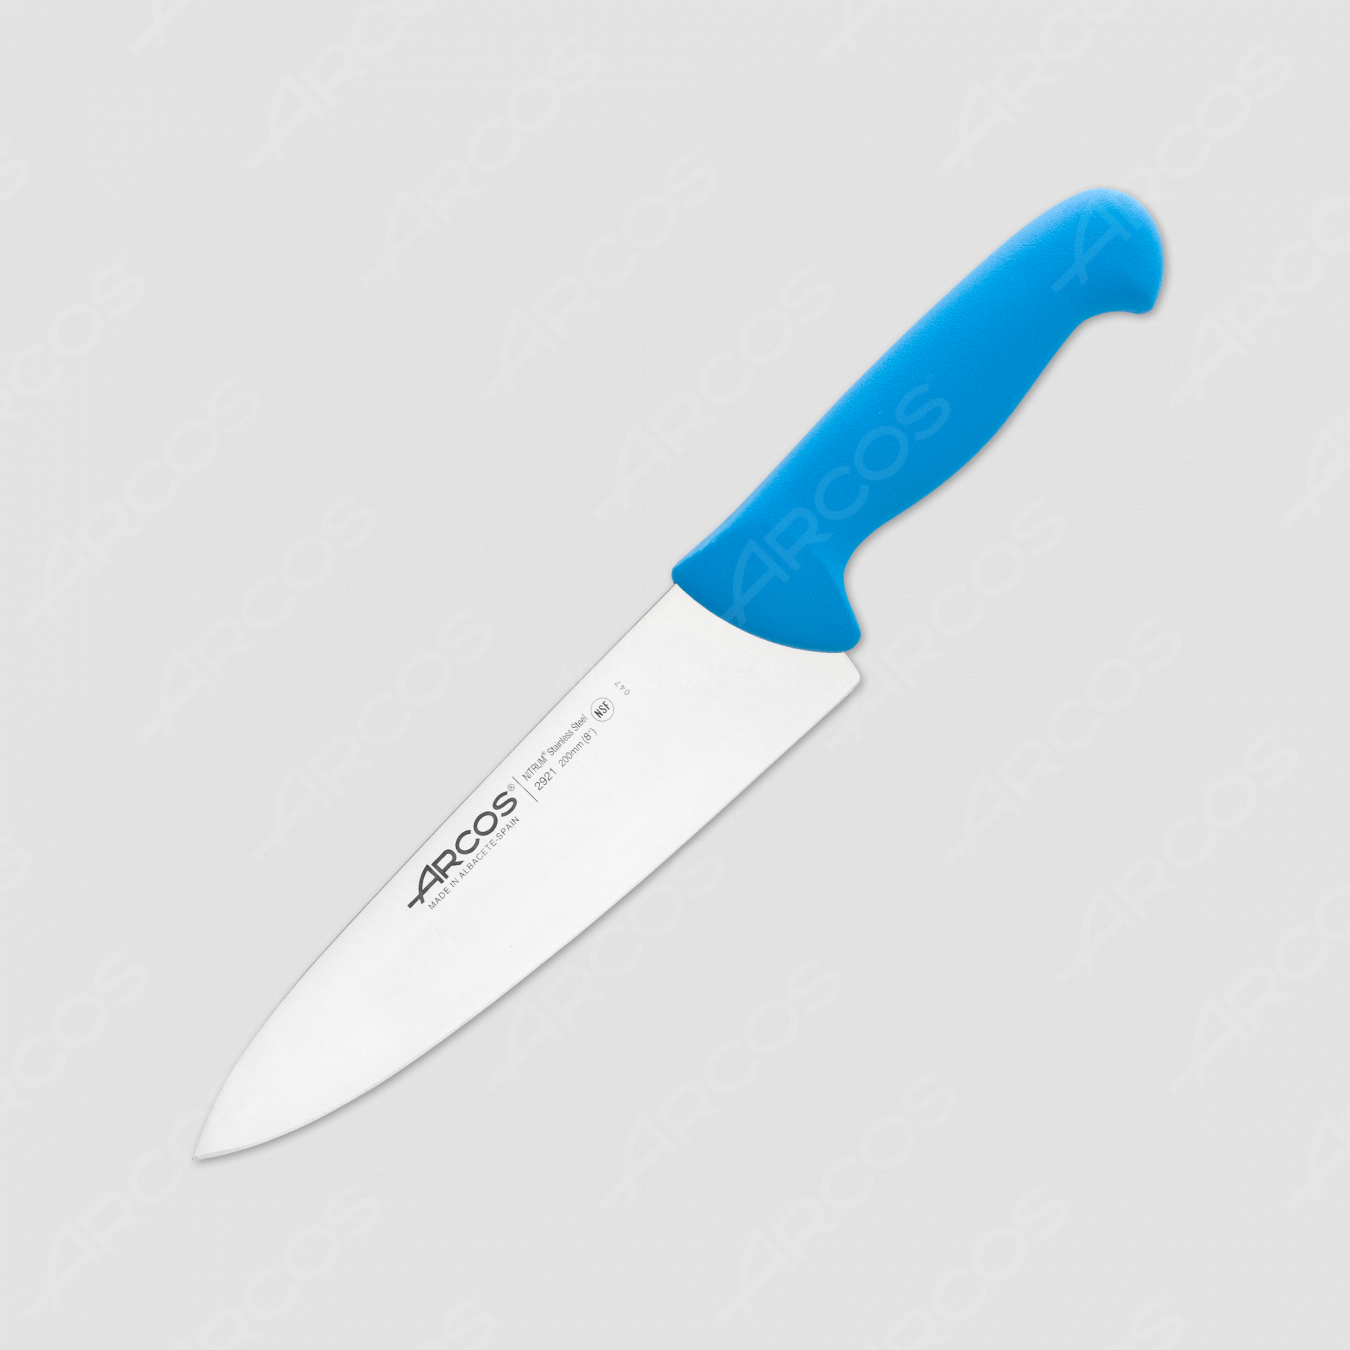 Профессиональный поварской кухонный нож 20 см, рукоять голубая, серия 2900, ARCOS, Испания